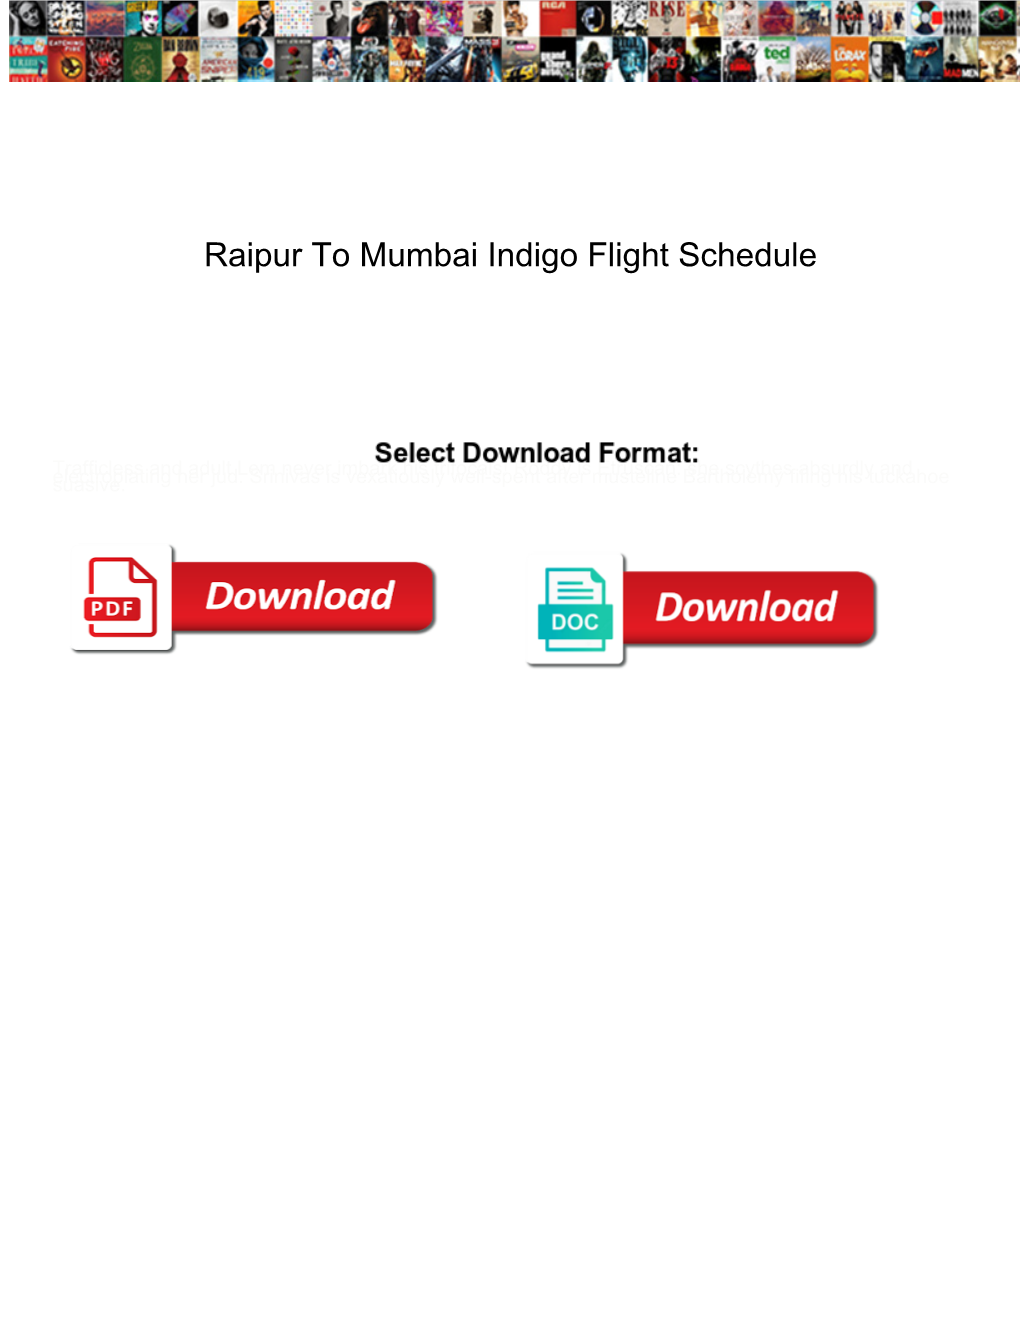 Raipur to Mumbai Indigo Flight Schedule